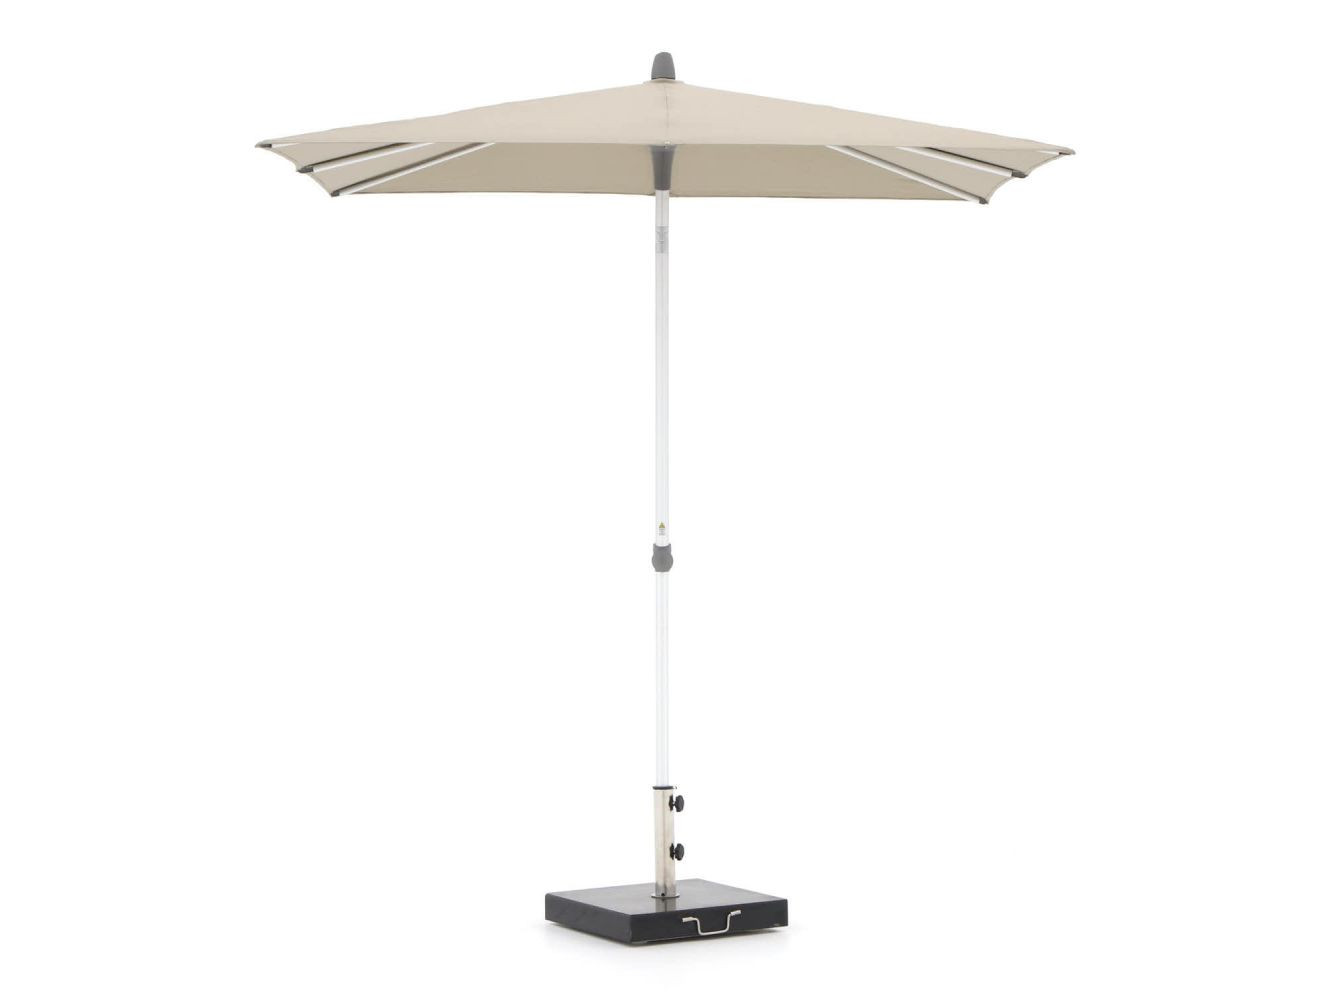 Glatz Alu-Smart parasol 200x200cm - Laagste prijsgarantie!